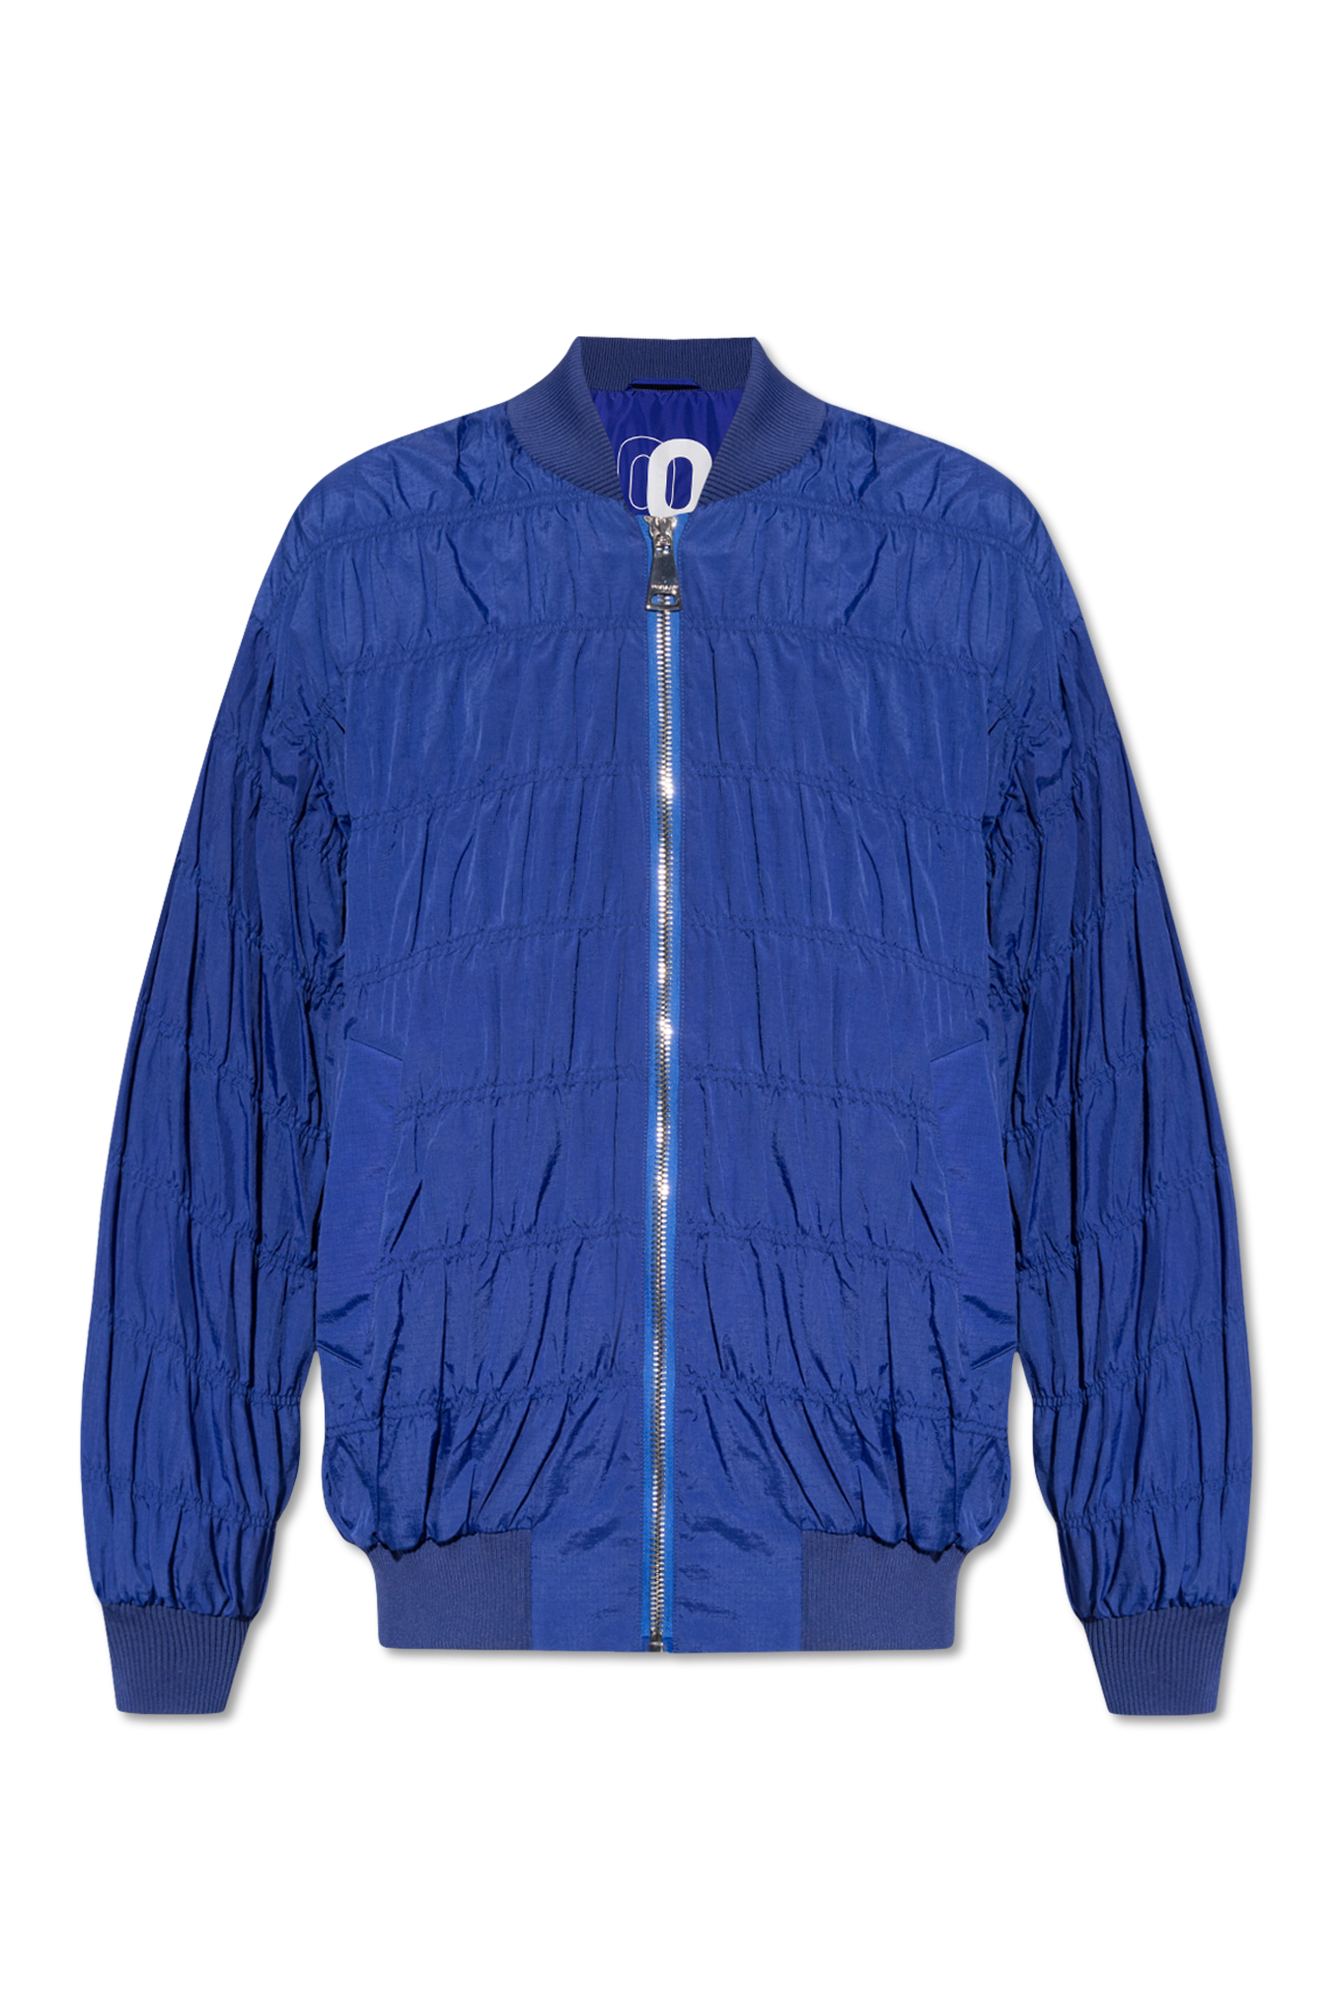 Khrisjoy ‘Micro’ bomber jacket